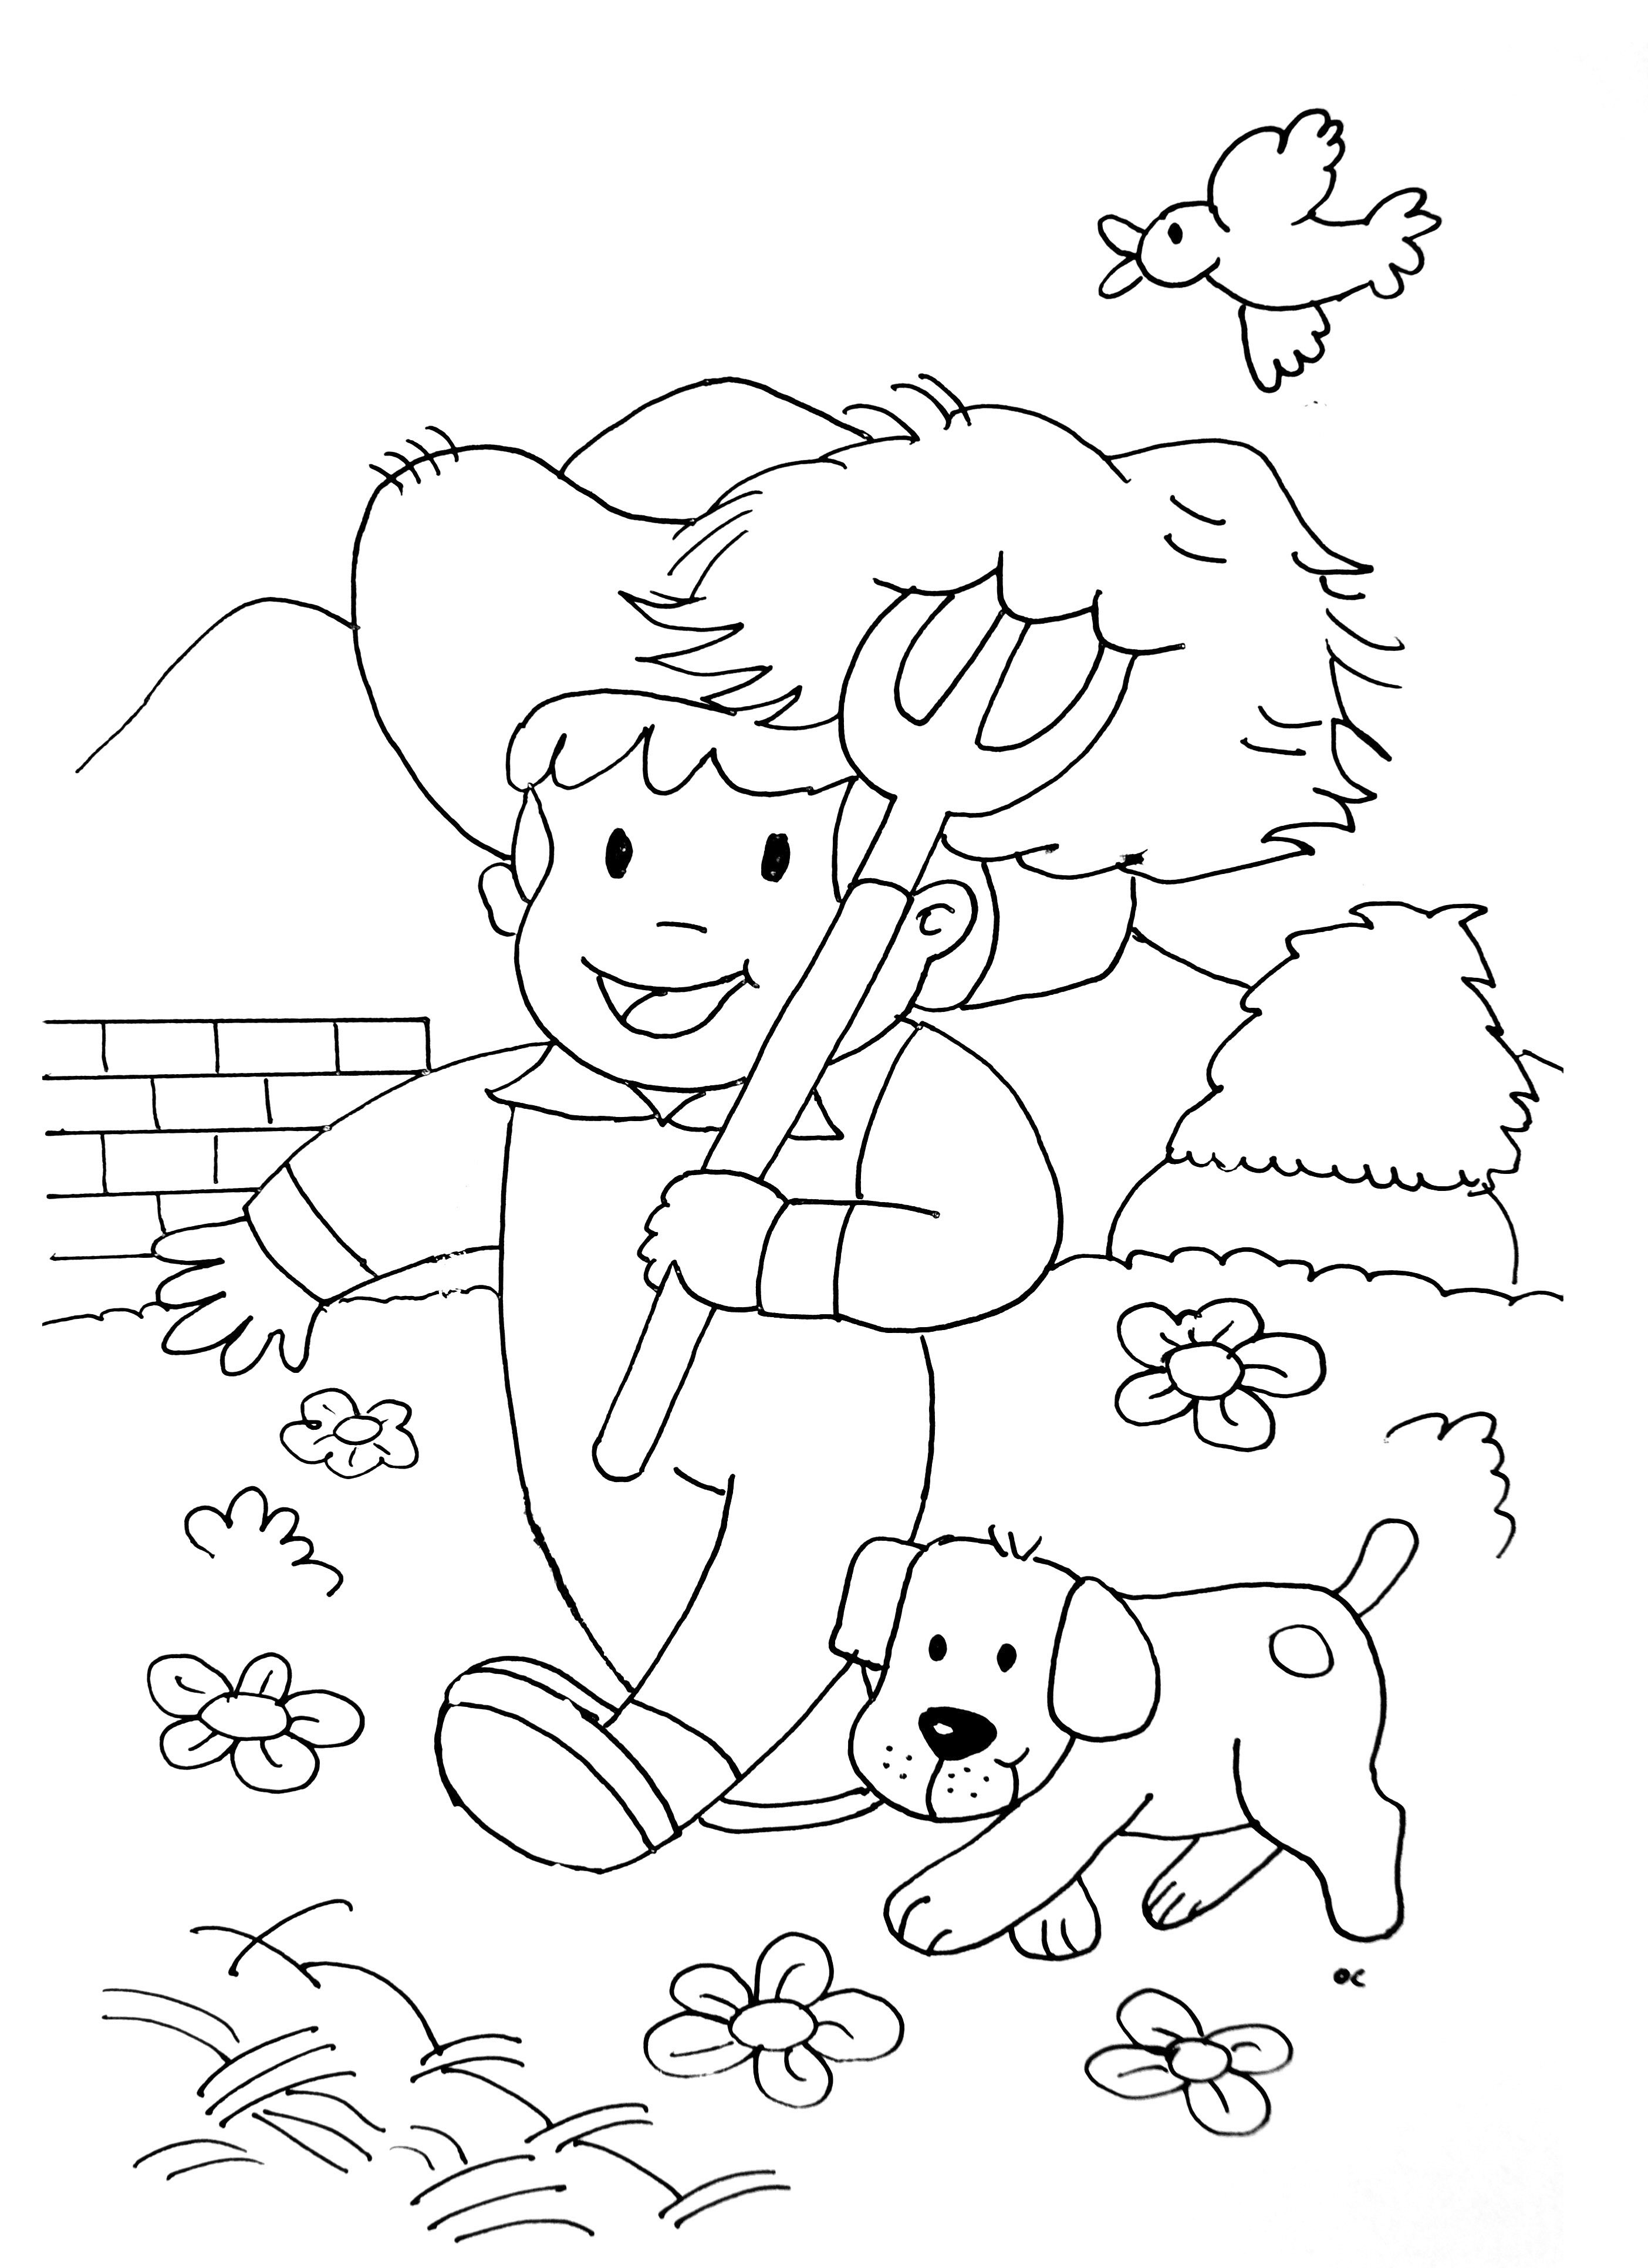 Desenho e Imagem Trator Agricultor para Colorir e Imprimir Grátis para  Adultos e Crianças 